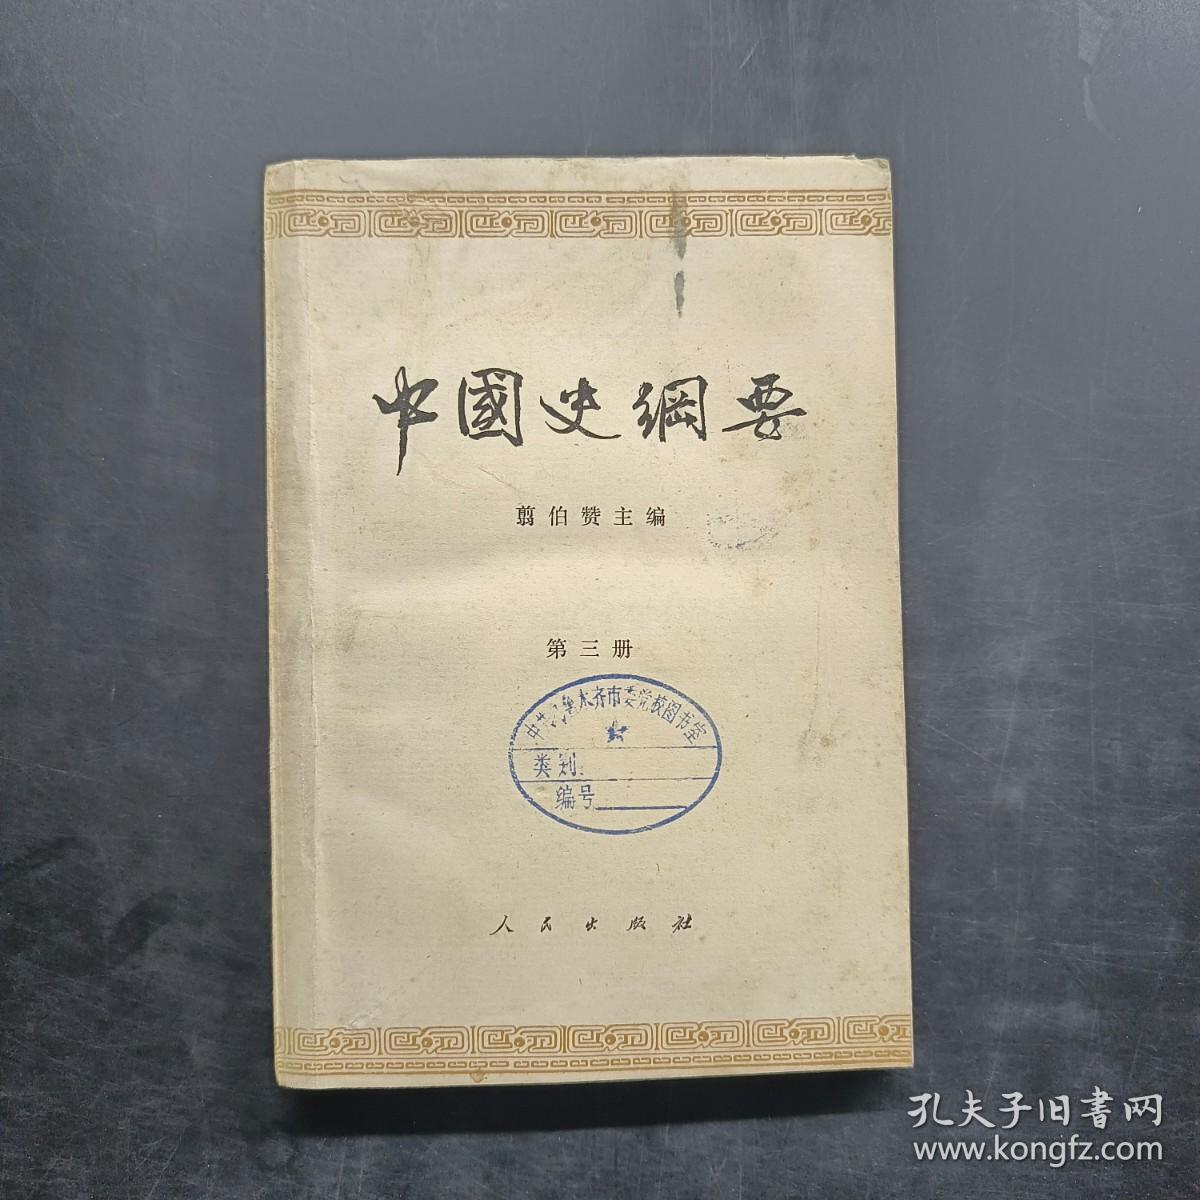 中国史纲要 第三册